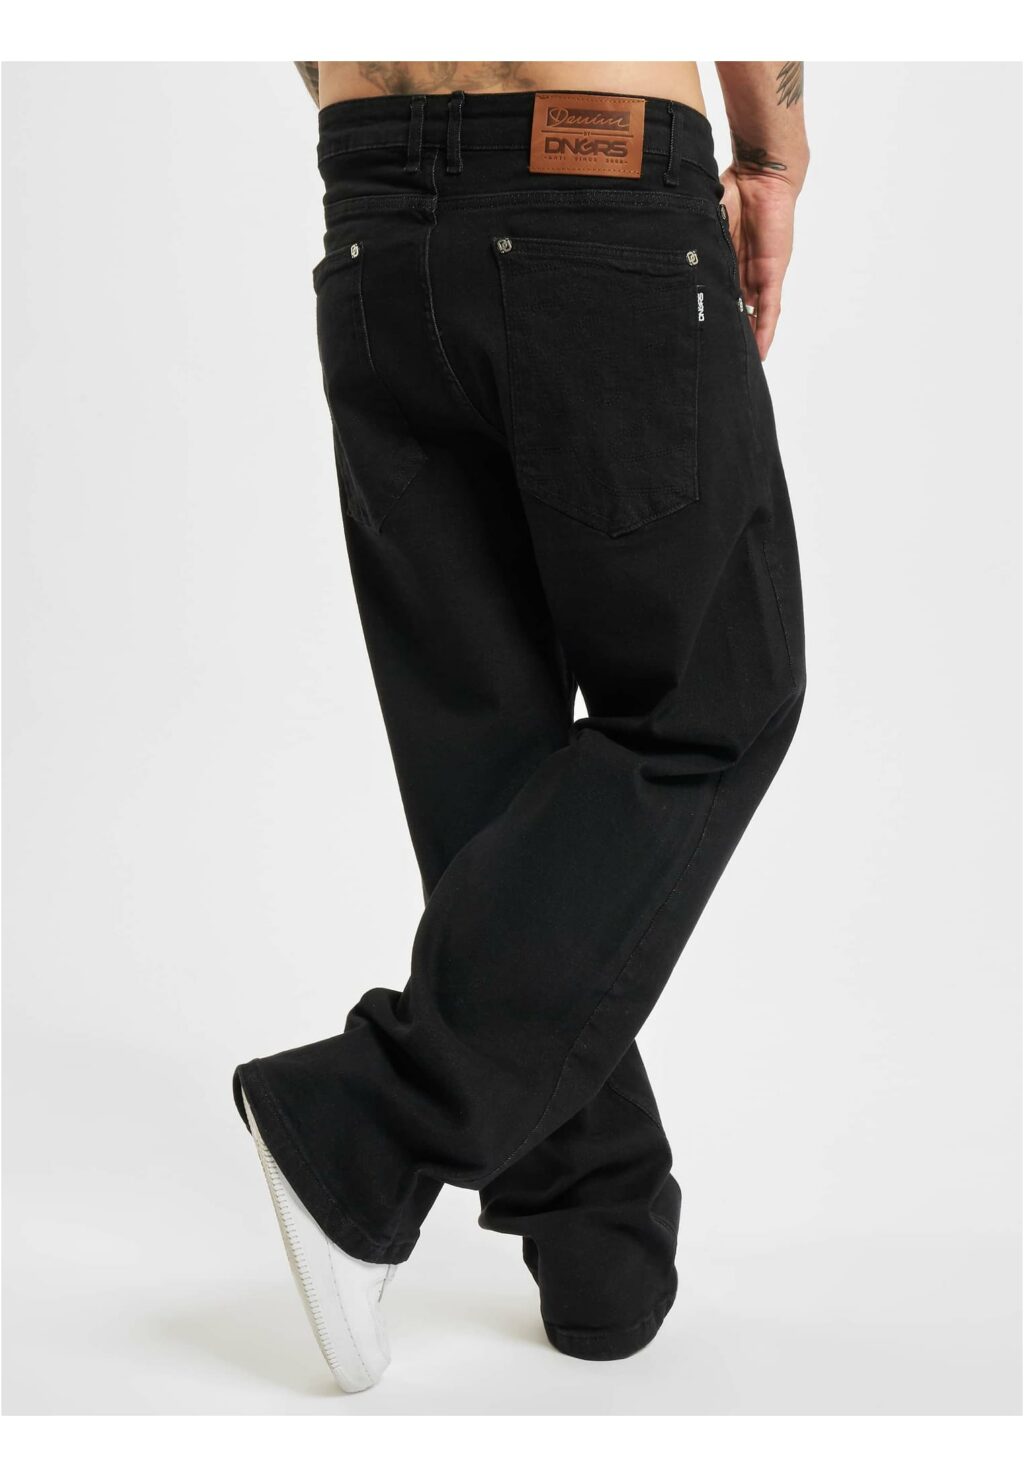 Homie Baggy Jeans black DGJS158